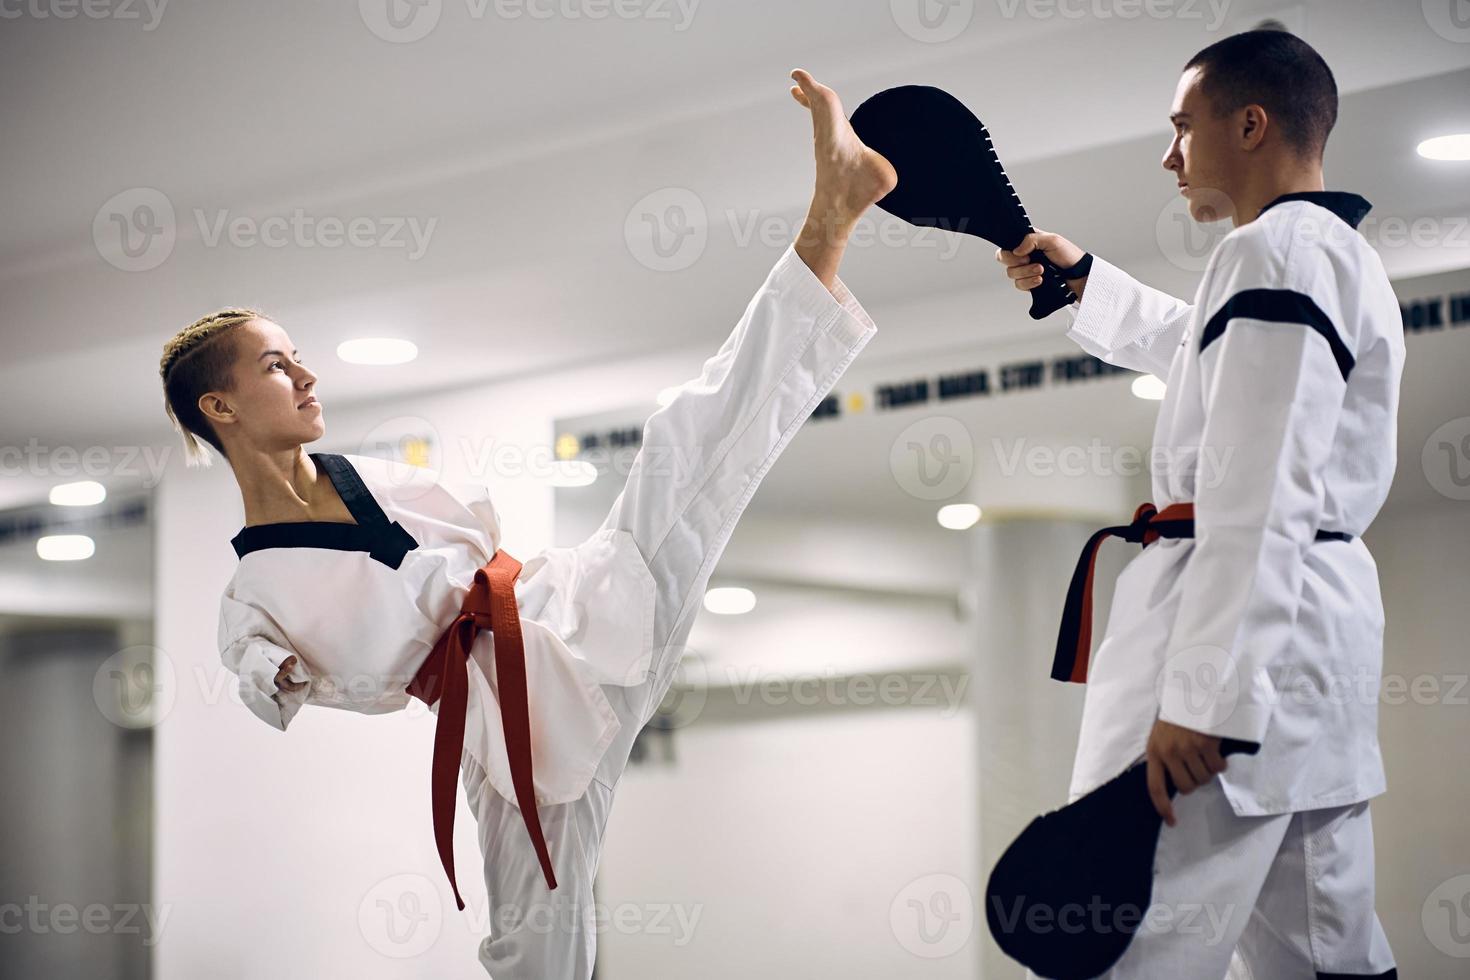 determinada artista marcial com deficiência exercitando chute alto com seu treinador durante o treinamento de taekwondo. foto